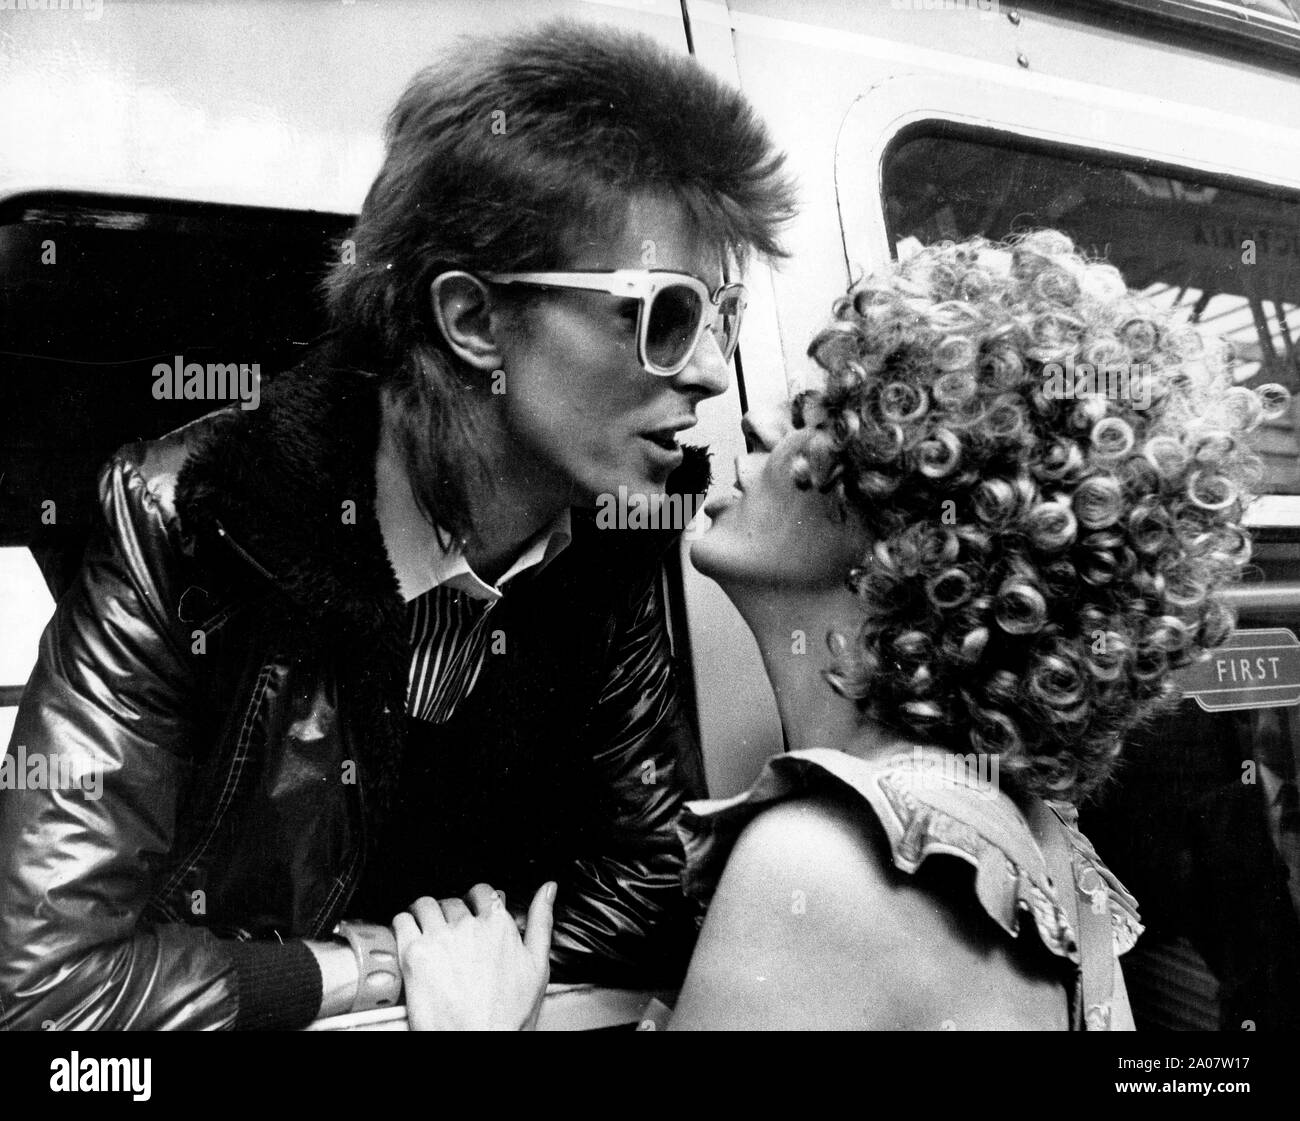 9 luglio 1973 - Londra, Inghilterra, Regno Unito - Pop Star David Bowie (26), baci di sua moglie ANGIE da dentro il suo treno alla stazione di Victoria. Egli è spento a Parigi per iniziare la registrazione del suo ultimo LP. (Credito Immagine: © Keystone Press Agency/Keystone USA via ZUMAPRESS.com) Foto Stock